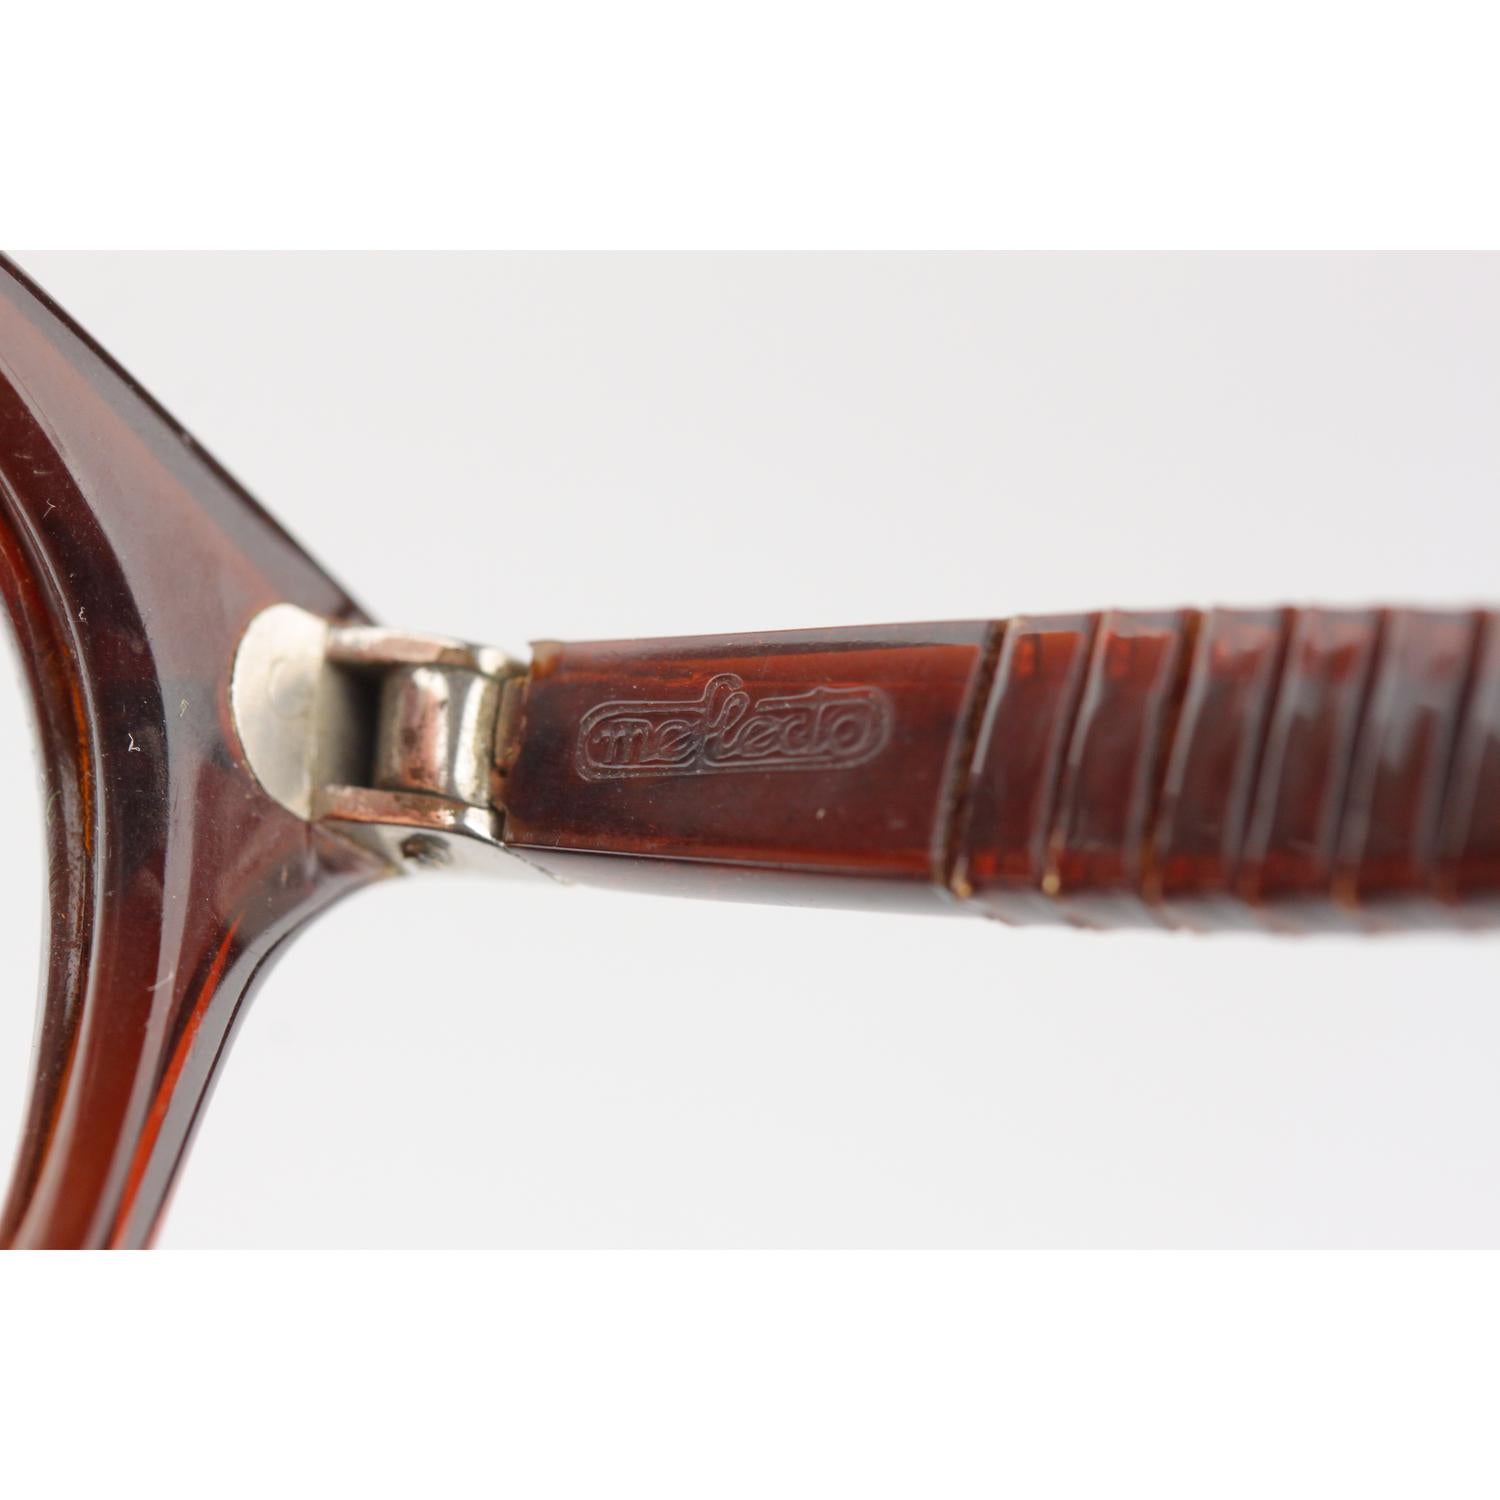 Persol Meflecto Rare Brown Eyeglasses 1940s Cicogna Ratti Torini Logo 125 Wide 2